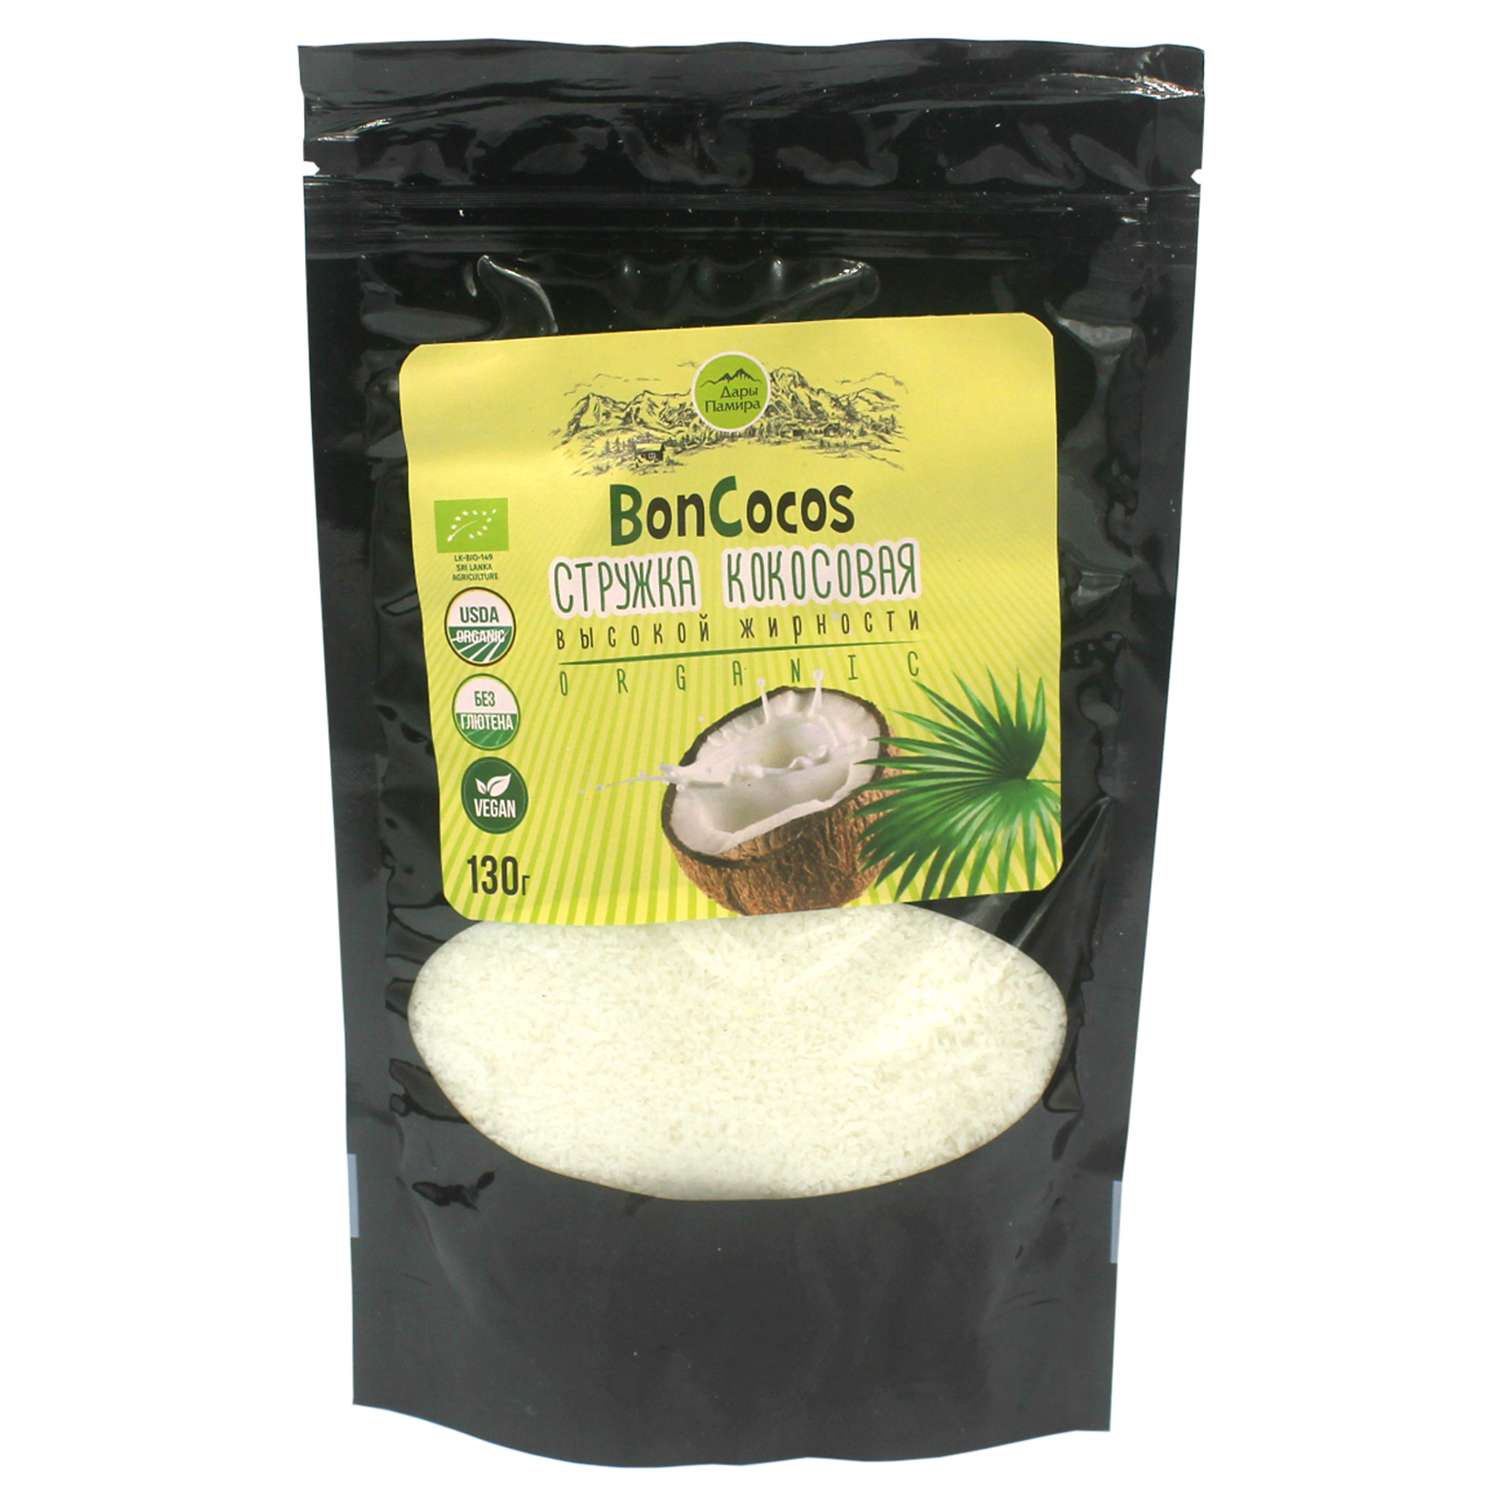 Стружка Дары Памира Boncocos кокосовая высокой жирности 130г - фото 1